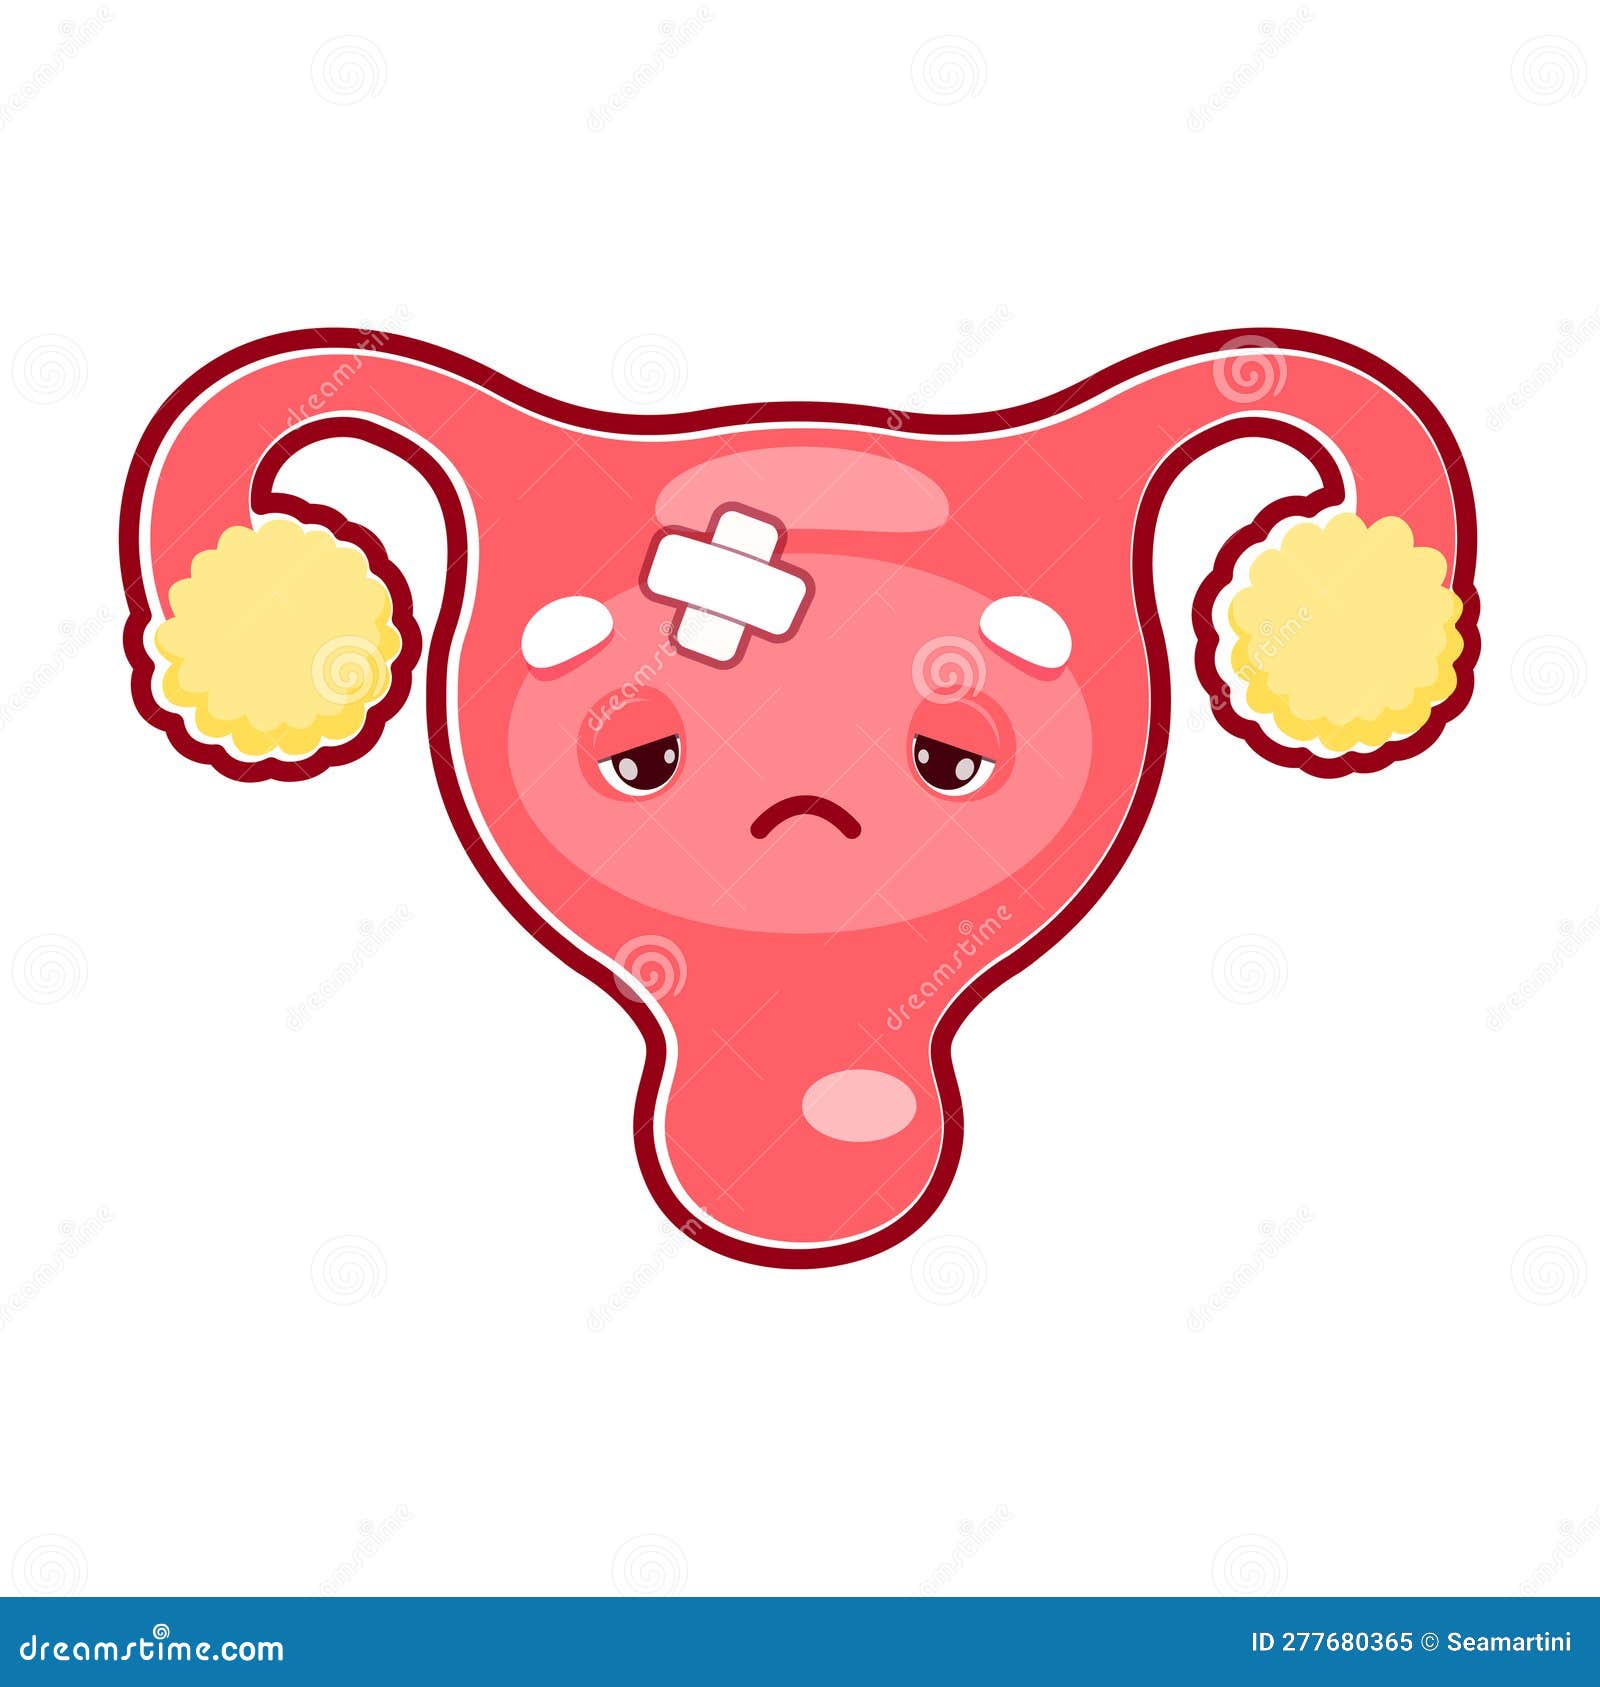 Cartoon Sick Uterus Organ Character, Woman Health Stock Vector ...